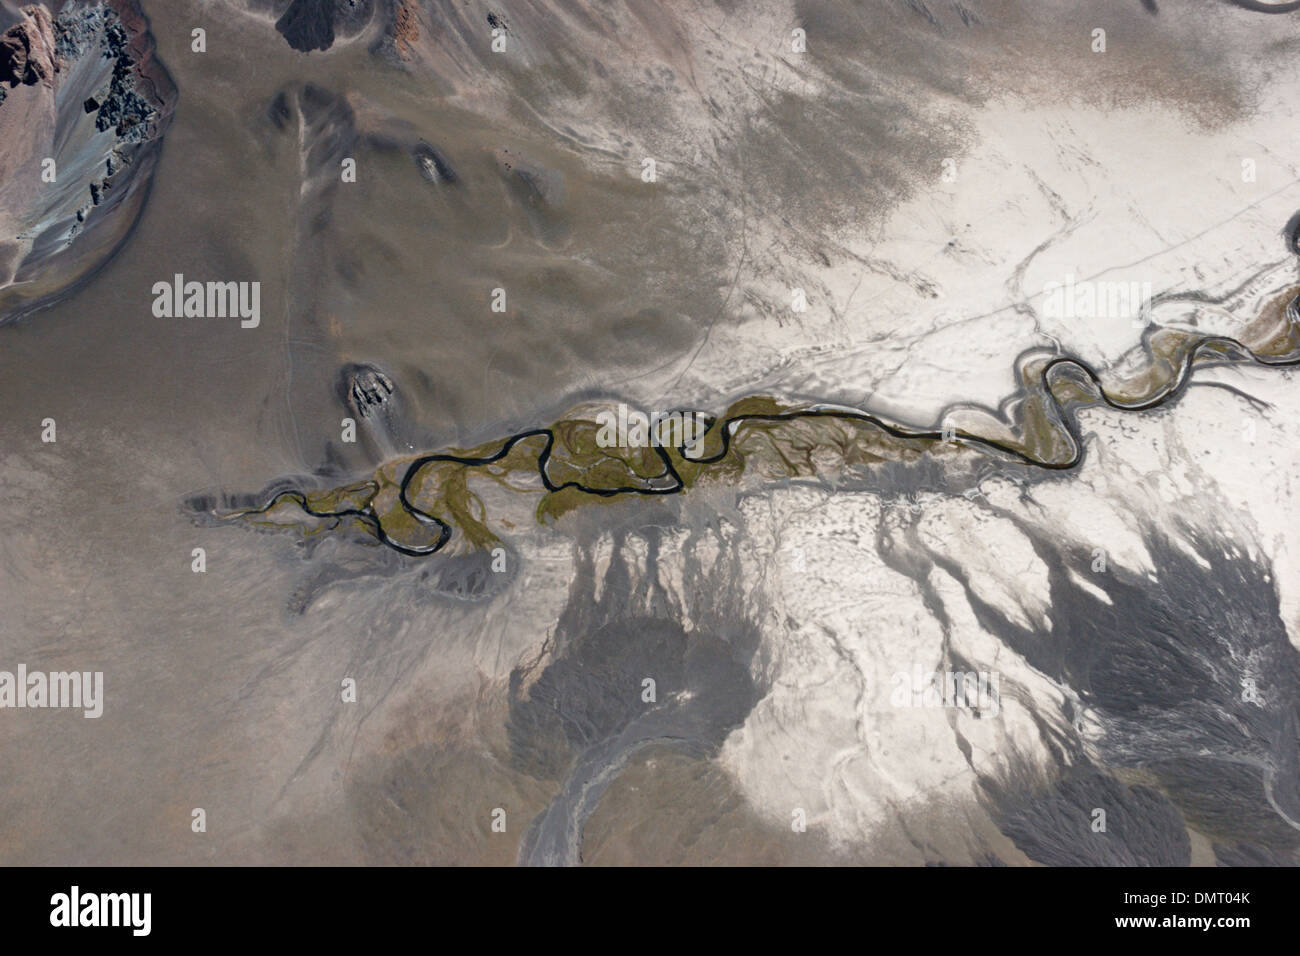 Andes Chili volcan river creek coulée de montagnes Vues aériennes Banque D'Images